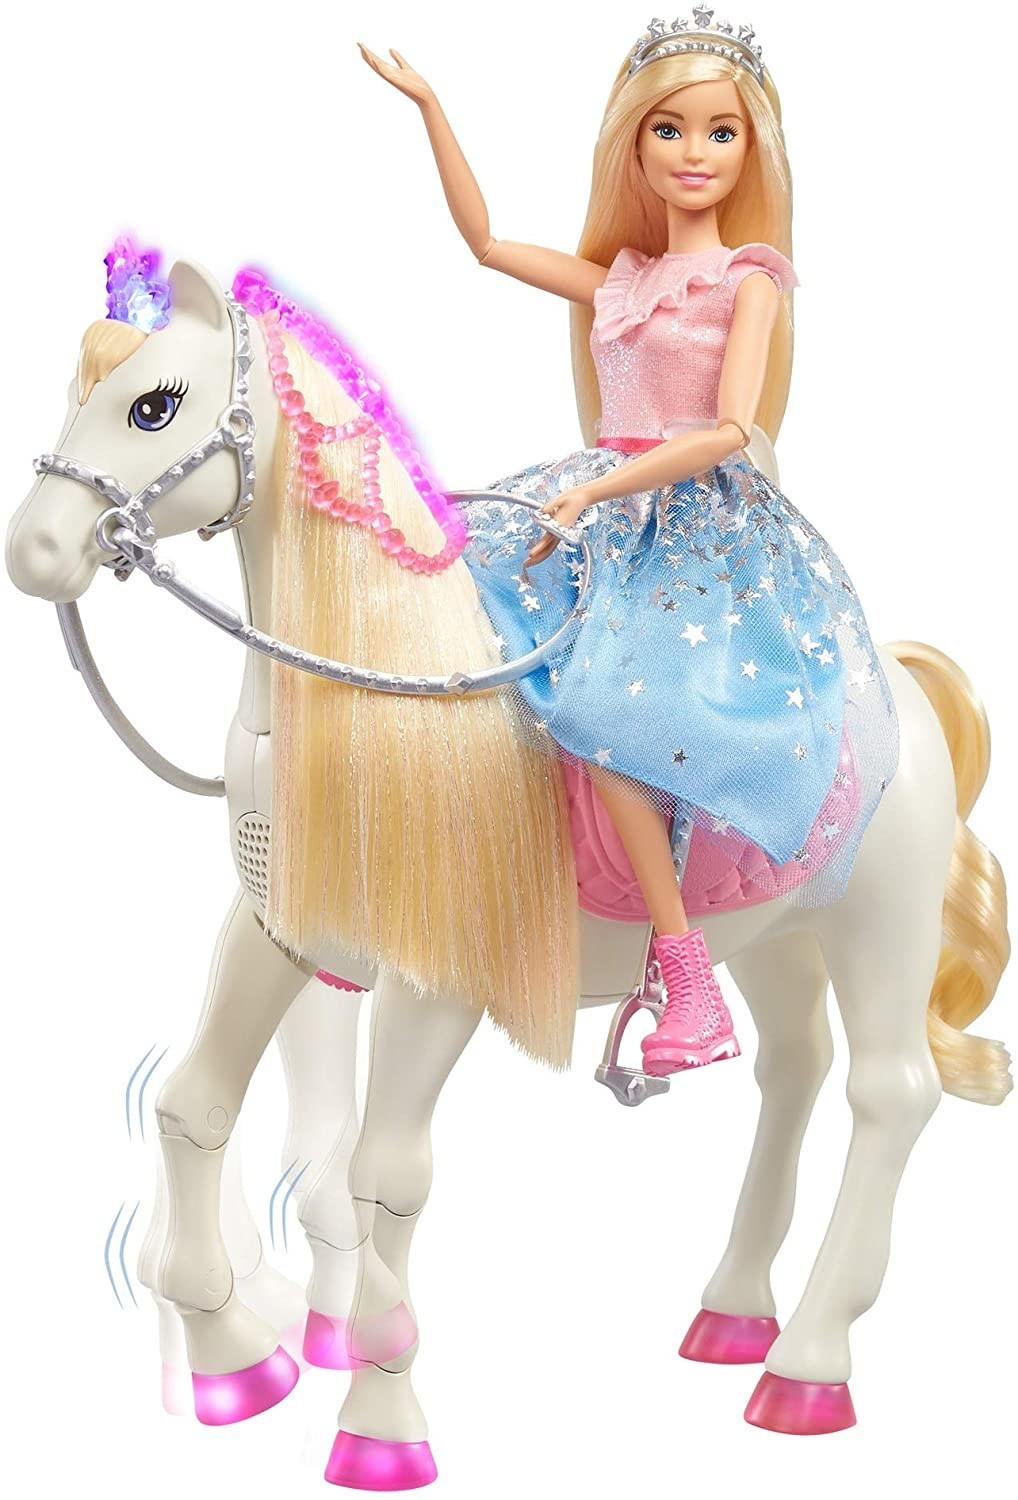 BARBIE Poupée Barbie Princess pas cher 